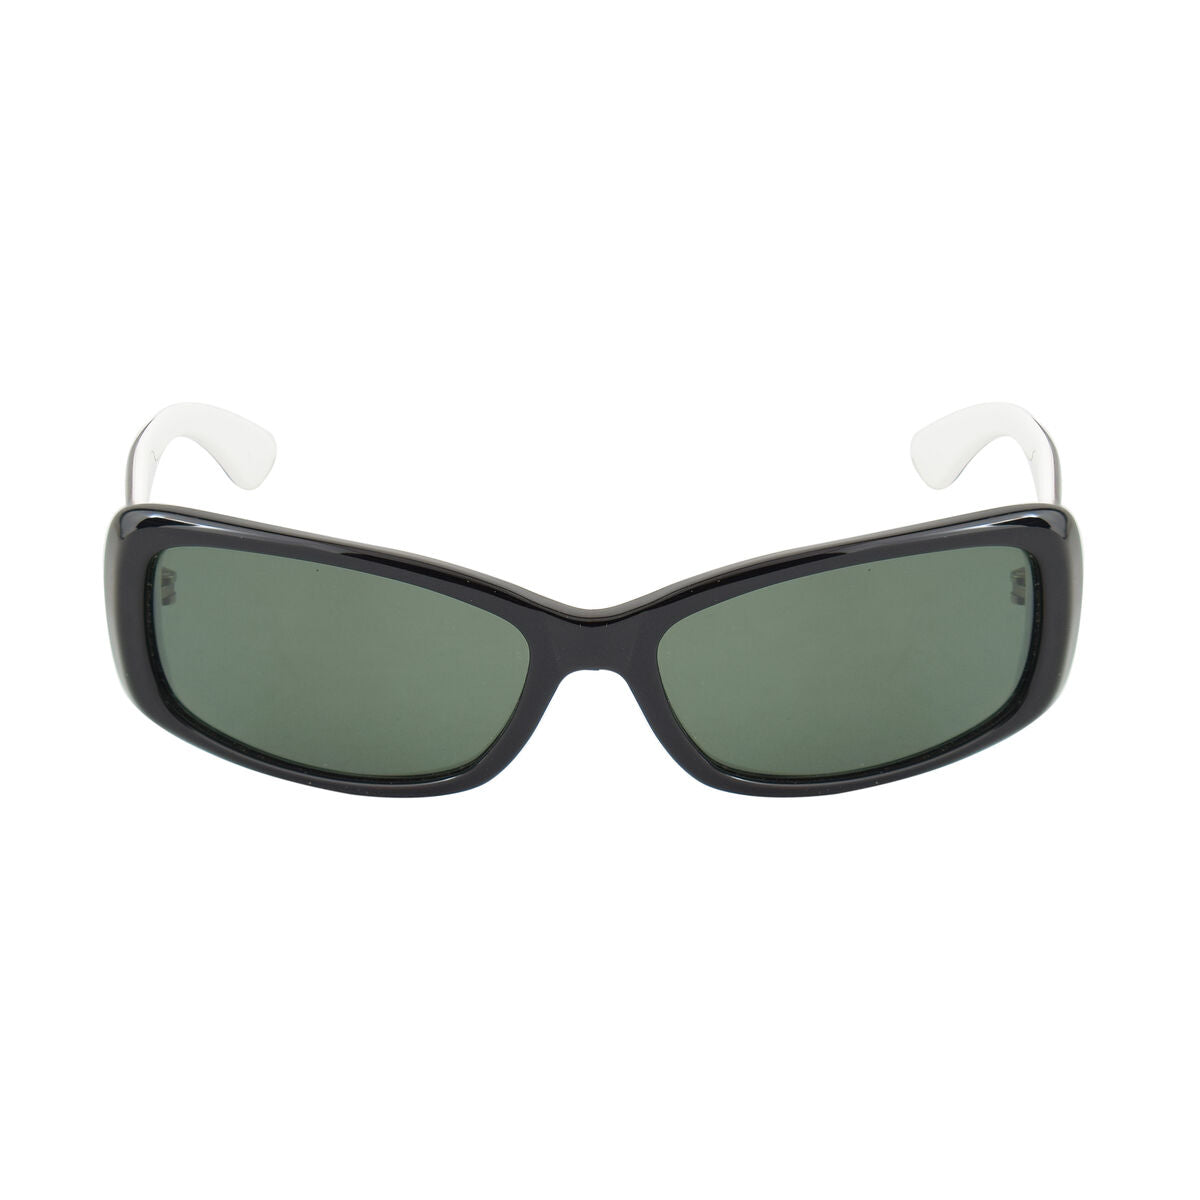 Kaufe Damensonnenbrille Vuarnet VL3618-NBL Ø 55 mm bei AWK Flagship um € 49.00